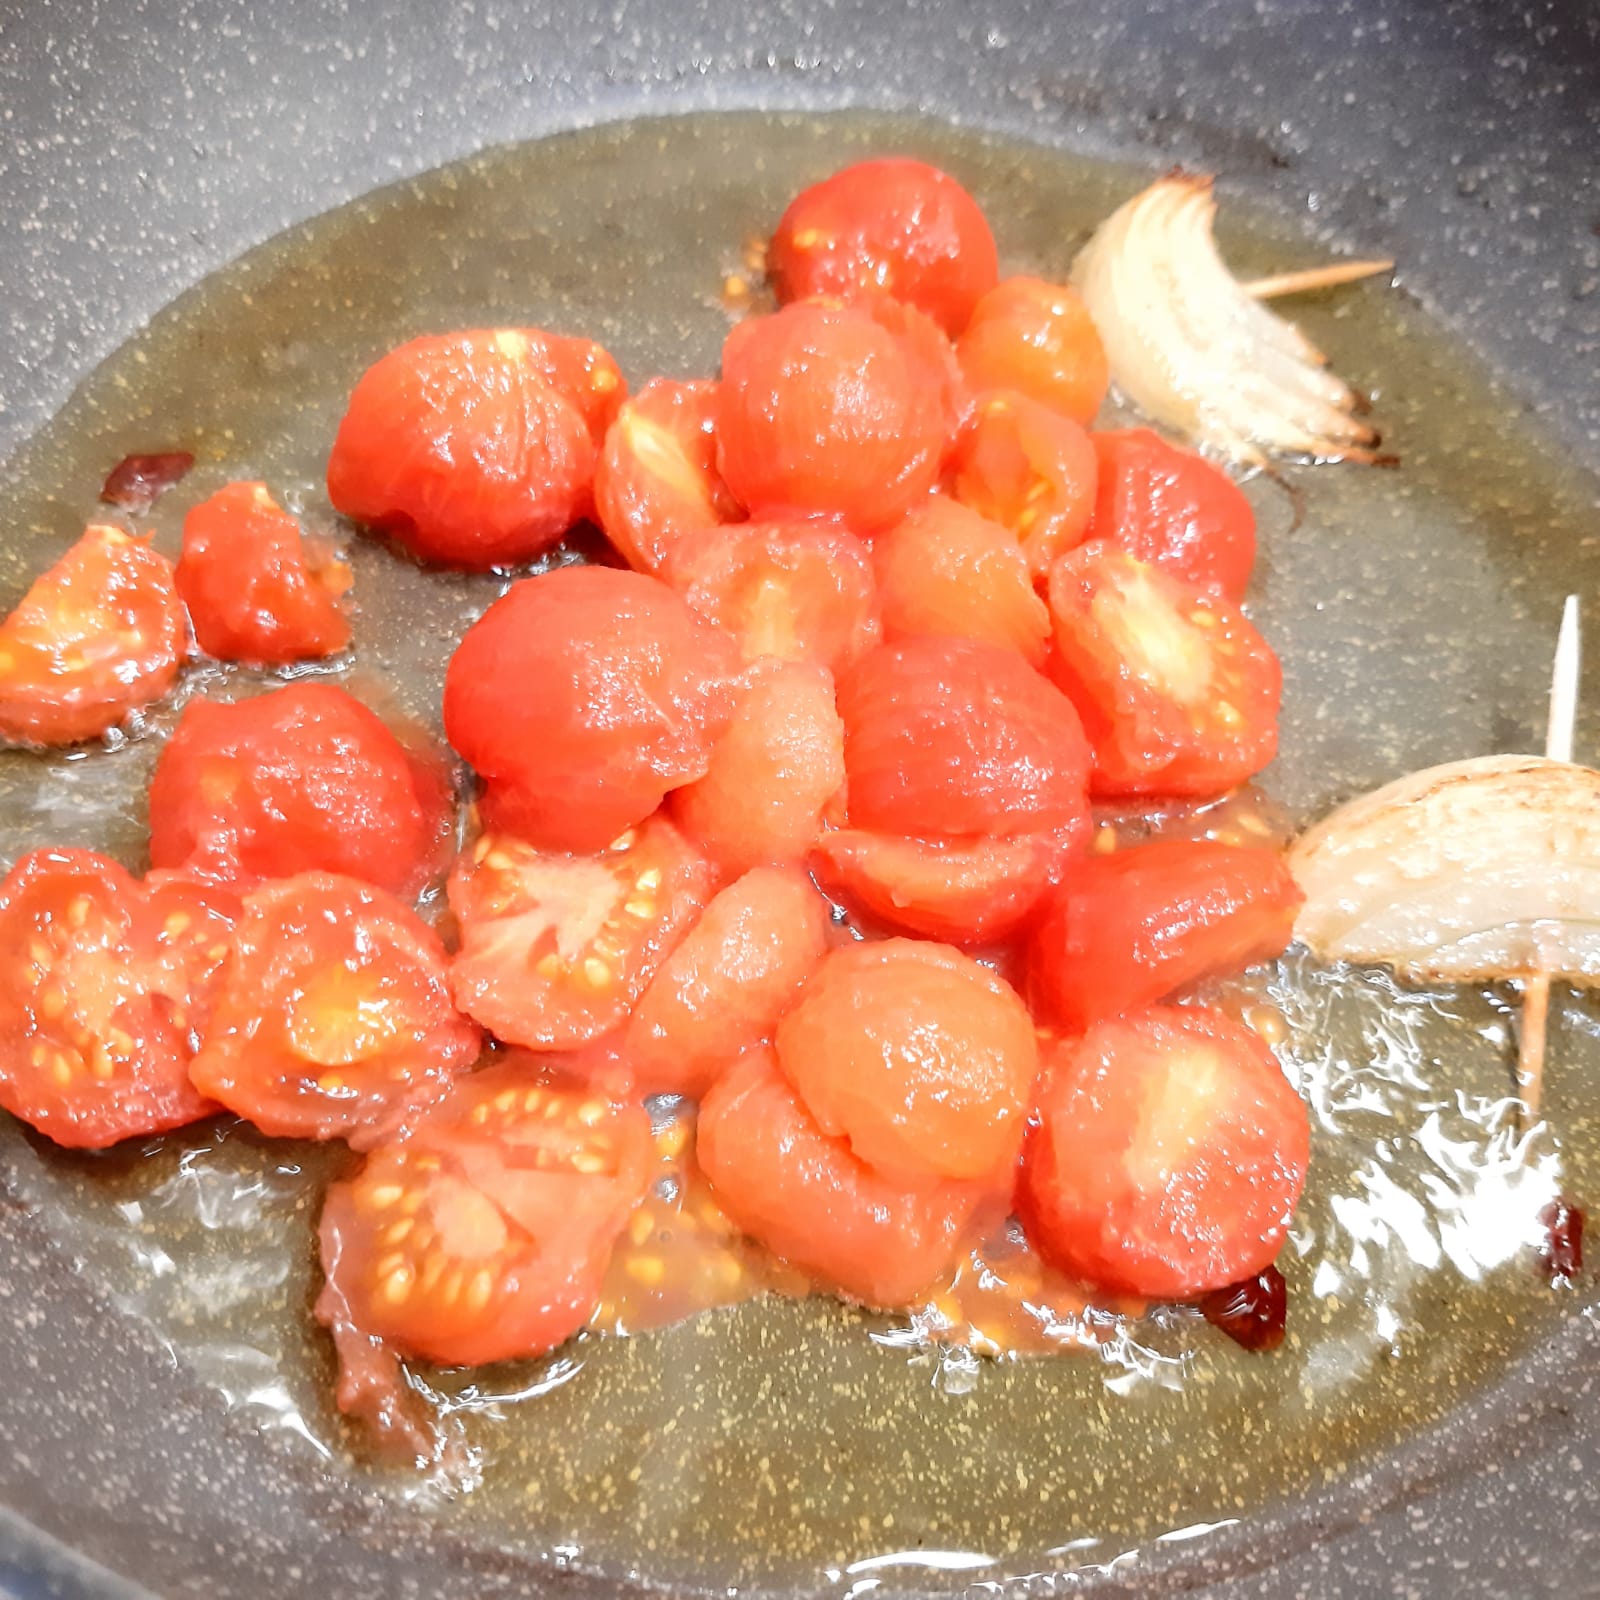 spighe di pasta all'uovo con salsa di pomodorini